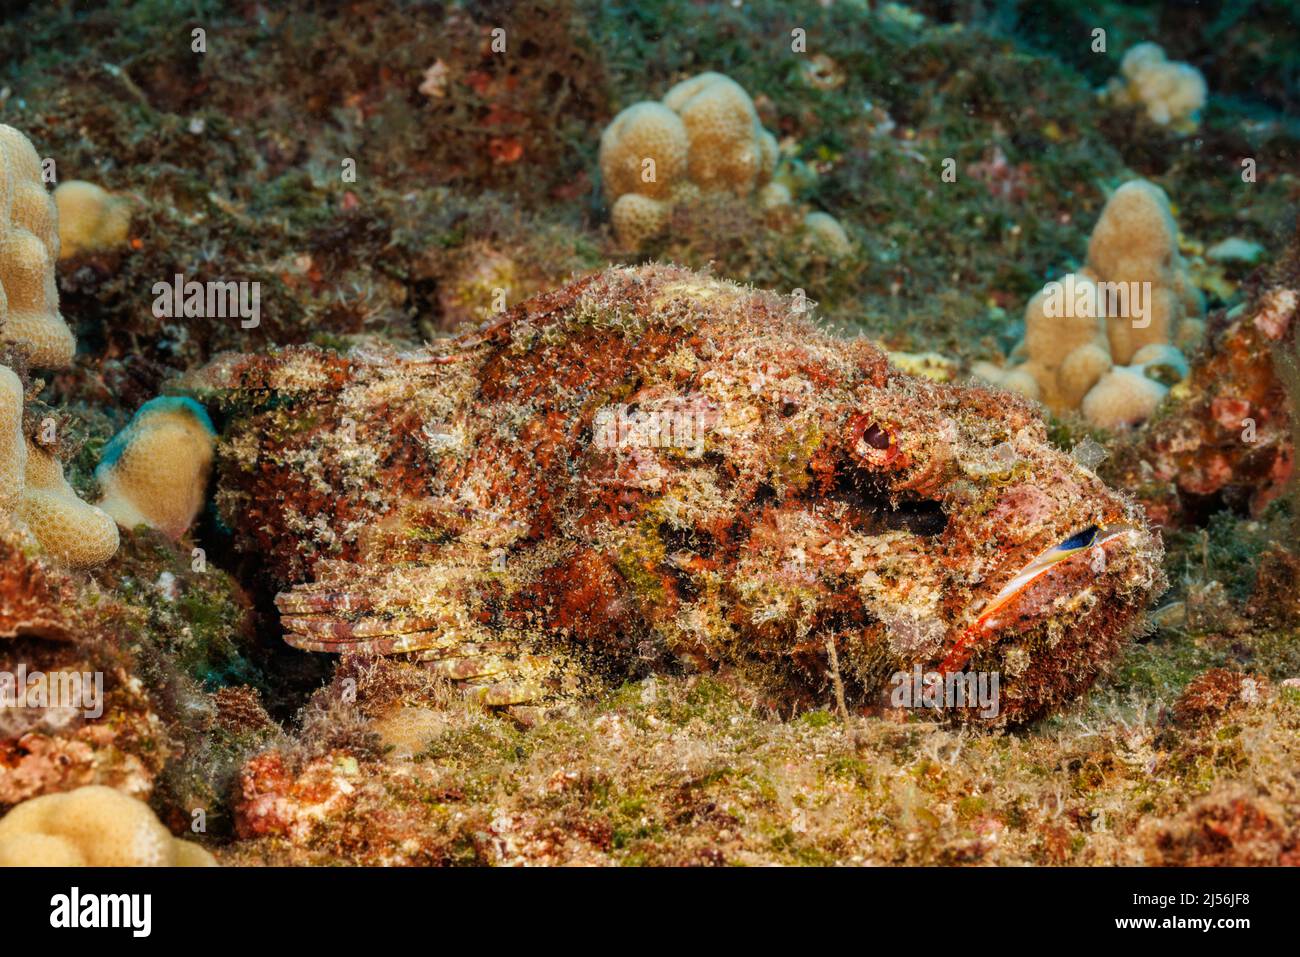 Le scorpionfish du diable, Scorpaenopsis diabolus, est un prédateur ambush qui repose sur un excellent camouflage. Banque D'Images